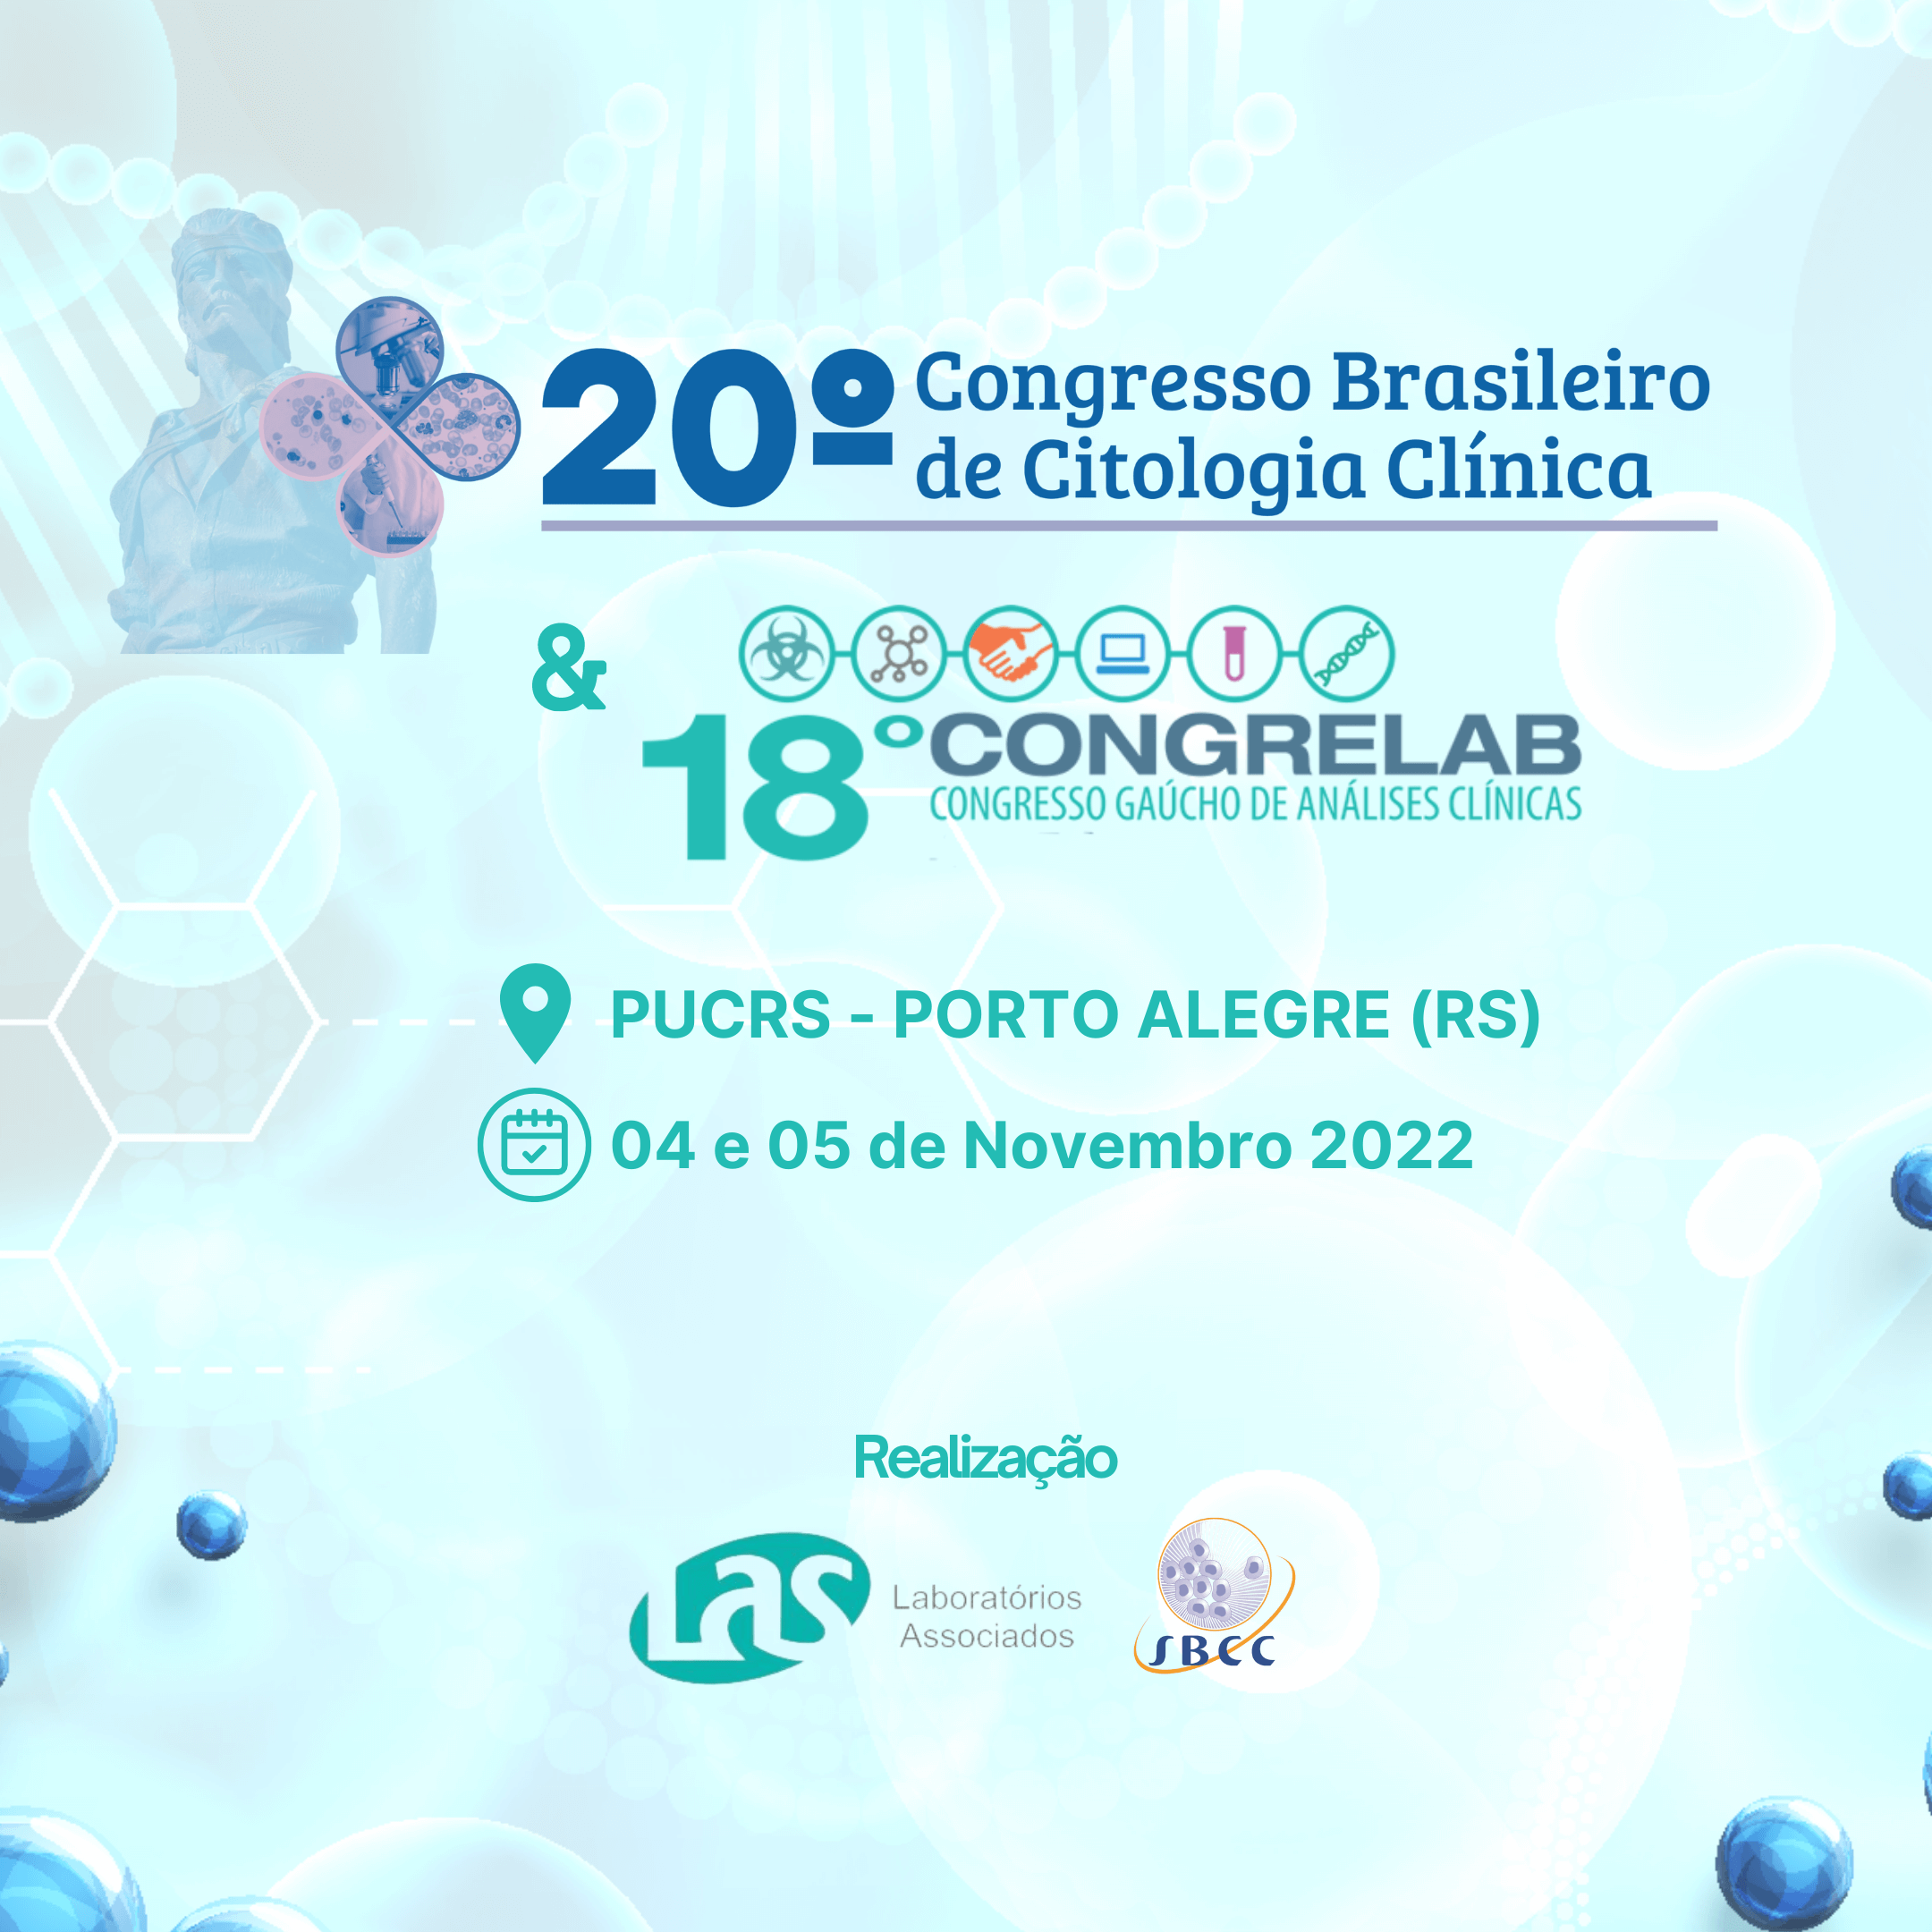 20° Congresso Brasileiro de Citologia Clínica